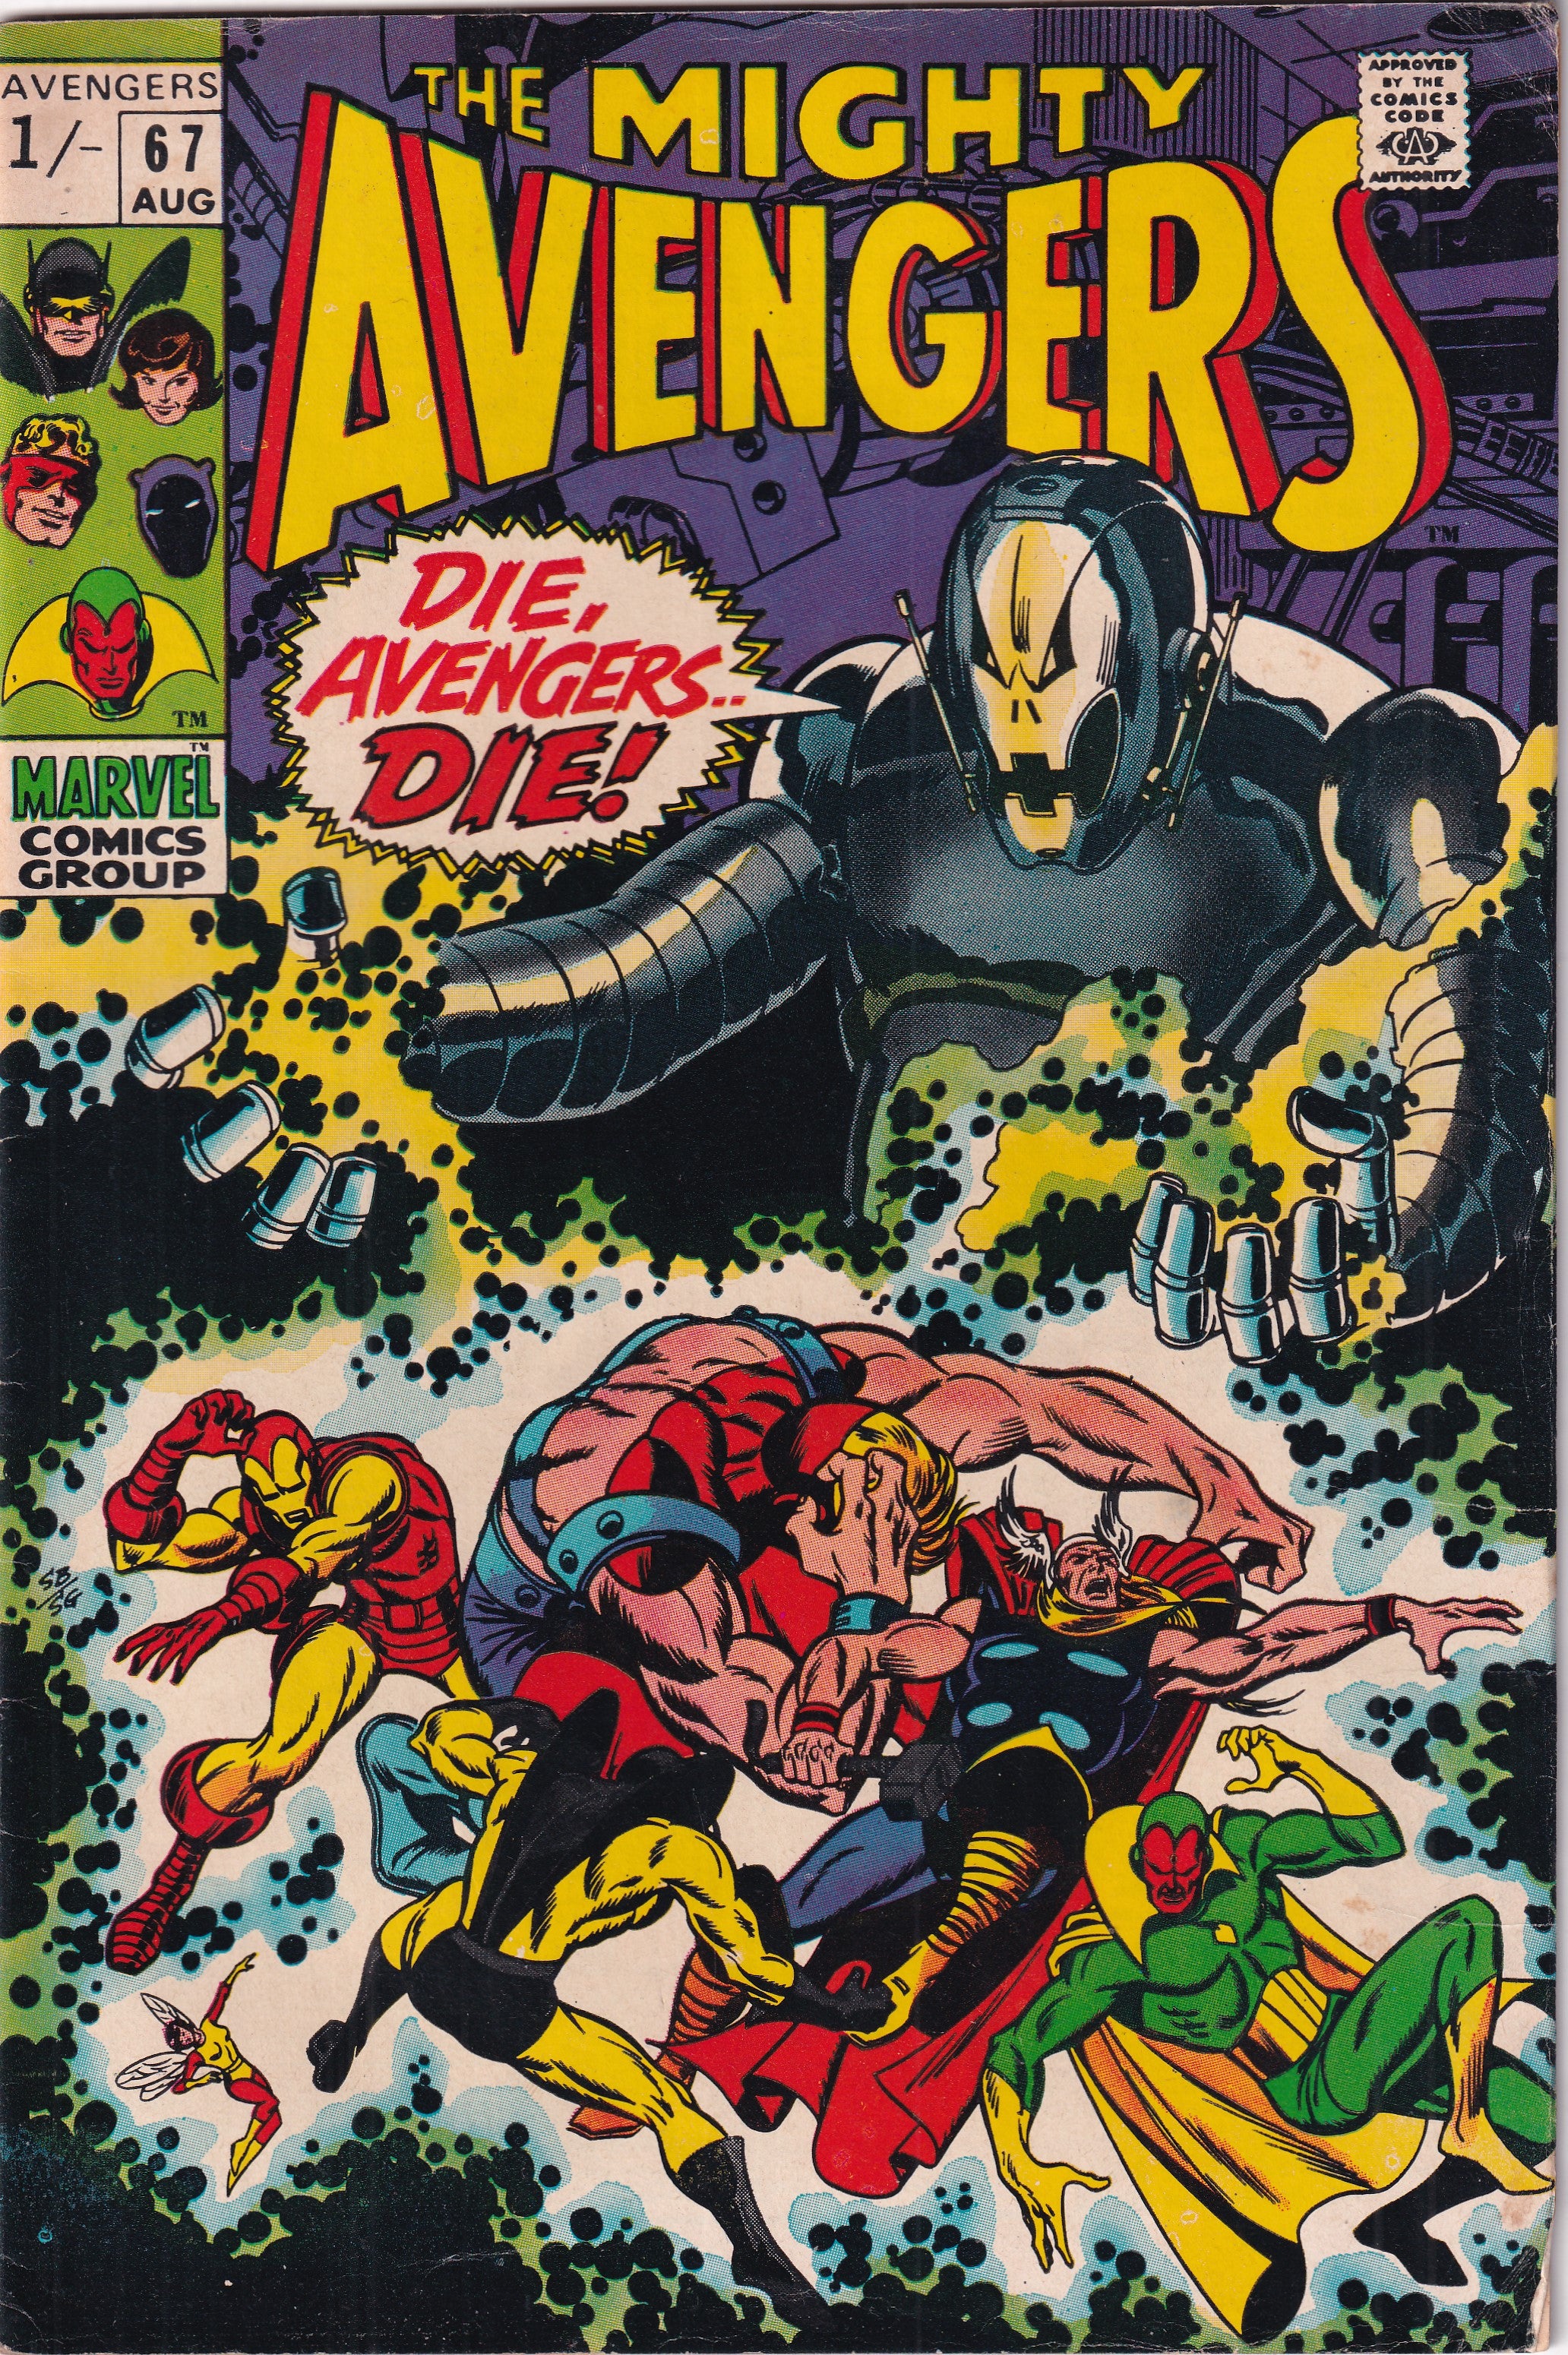 AVENGERS #67 - Slab City Comics 